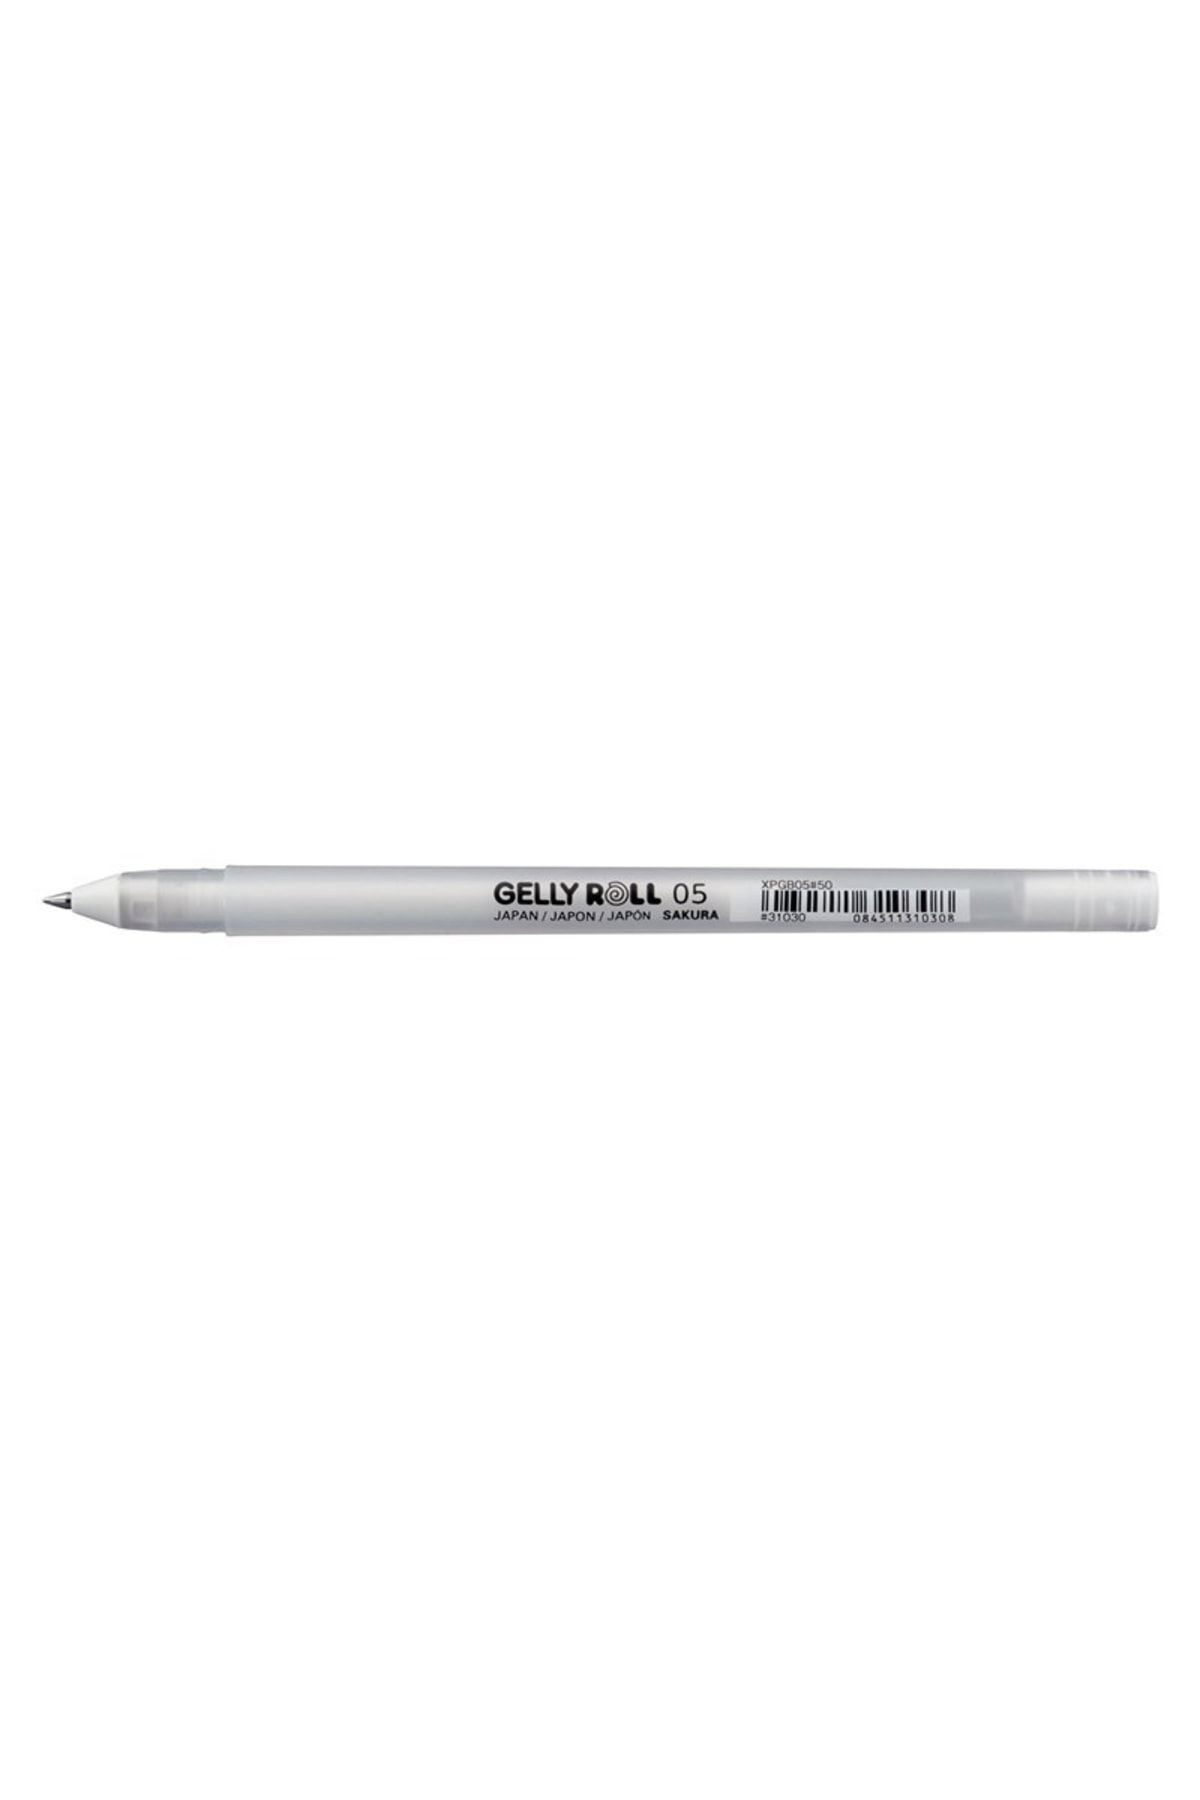 Sakura Gelly Roll Basic White 05 Fine Beyaz Jel Mürekkepli Kalem 0,3mm